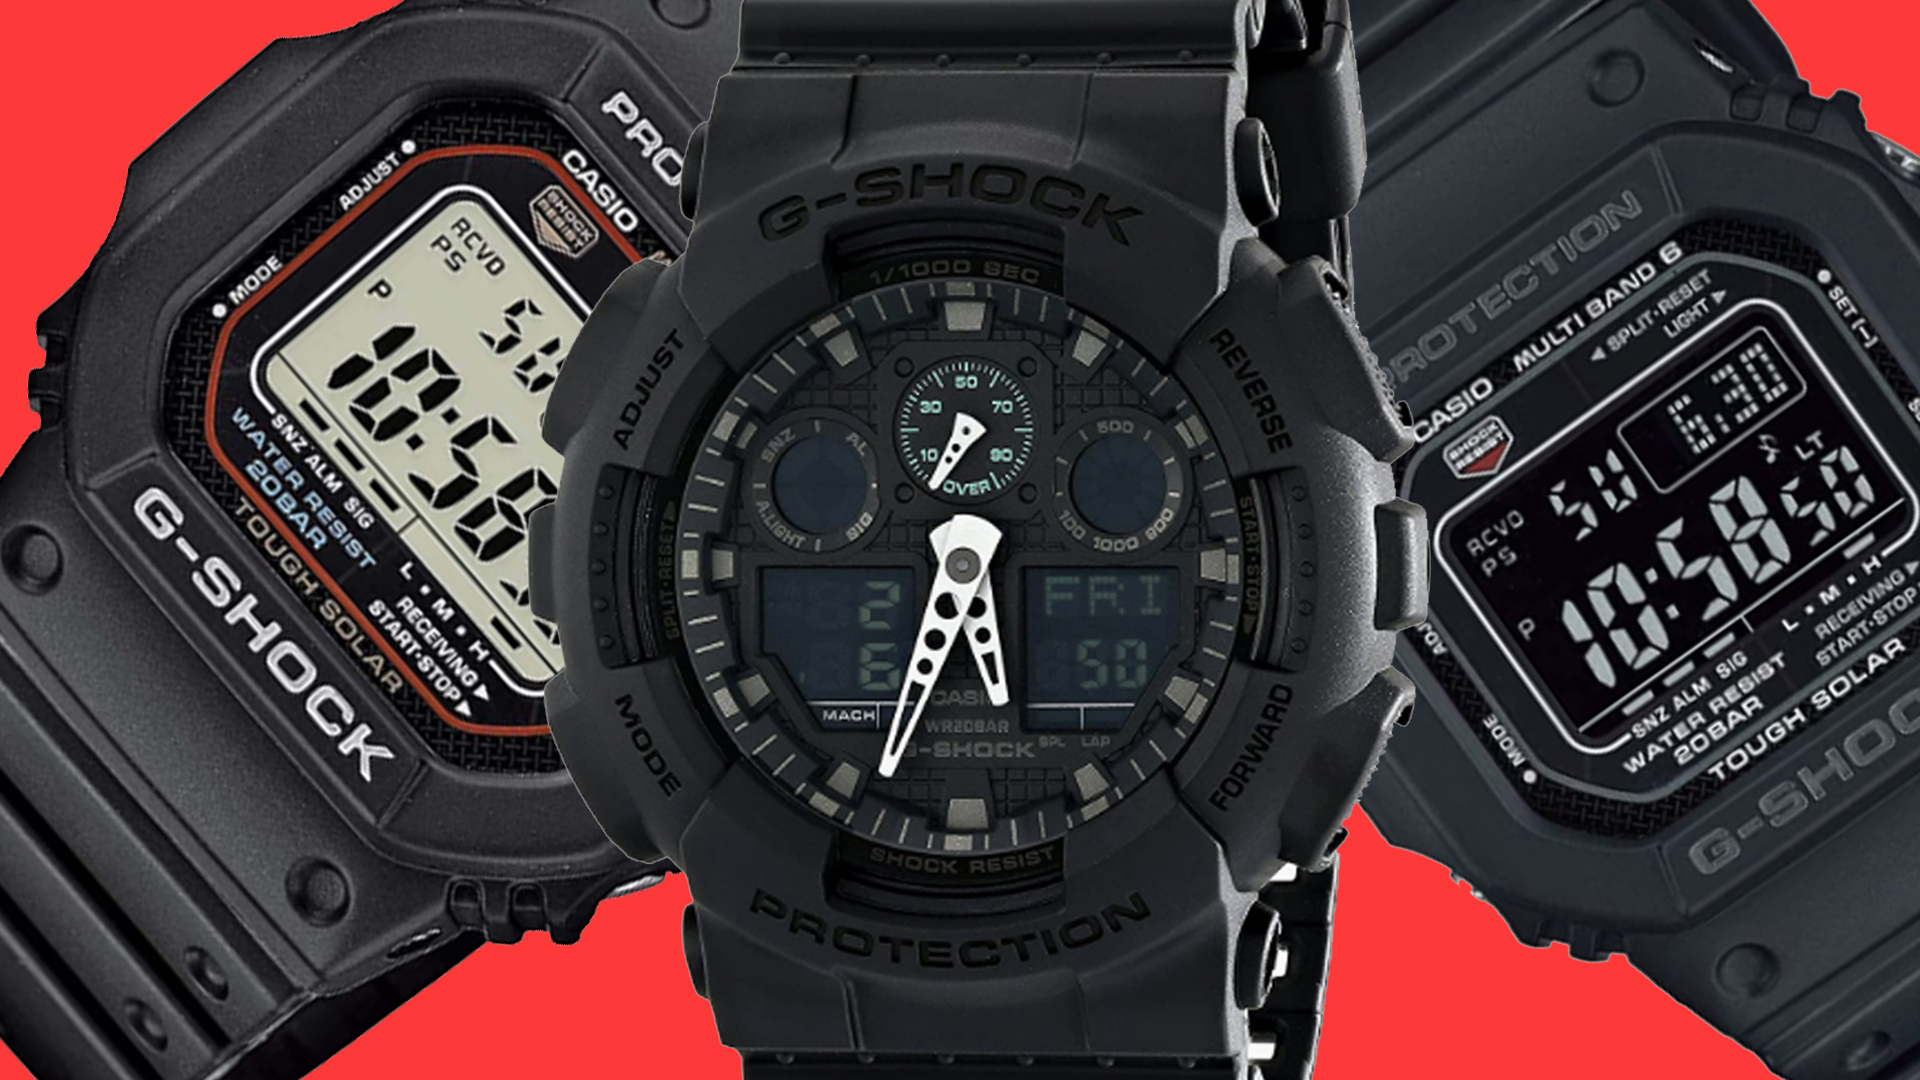 Si eres fan de los relojes G-Shock de Casio no puedes perderte este modelo  a precio mínimo histórico en